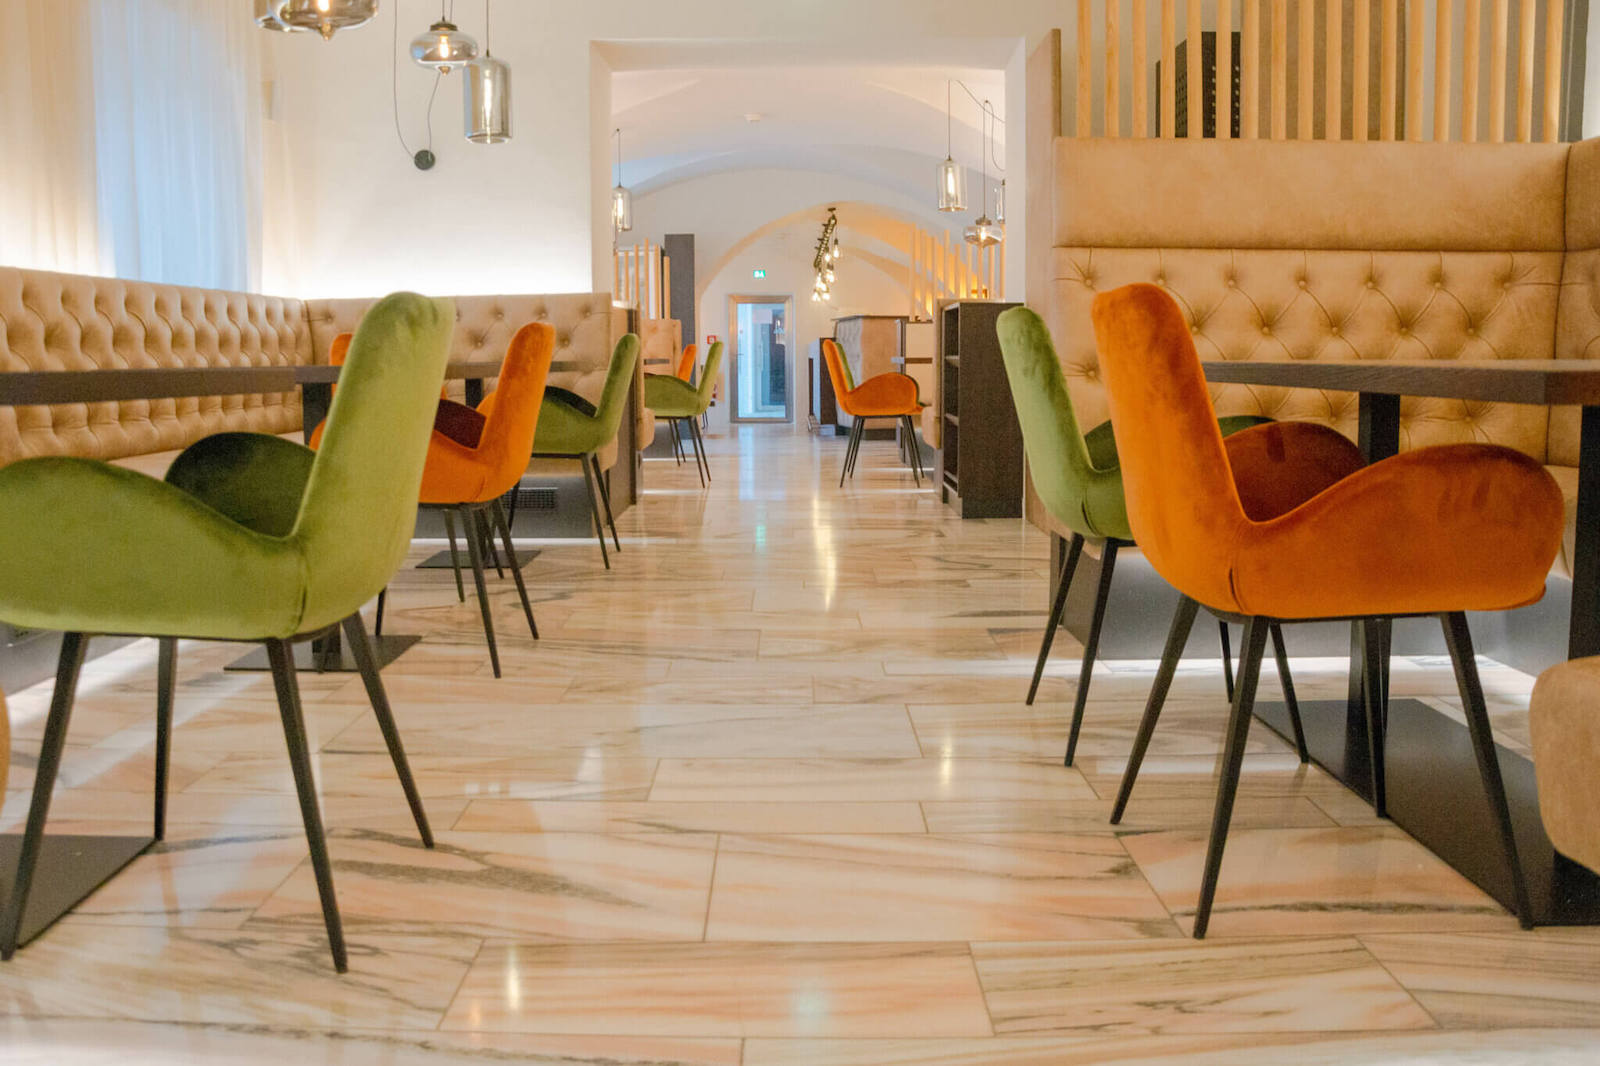 Warmes Licht und klassisch-elegantes Chesterfield wird mit modernen Elementen und kontrastreichen Farben kombiniert und sorgt für eine gemütliche, dennoch zeitlose Wohlfühl-Atmosphäre im historischen Innenbereich des Restaurants.